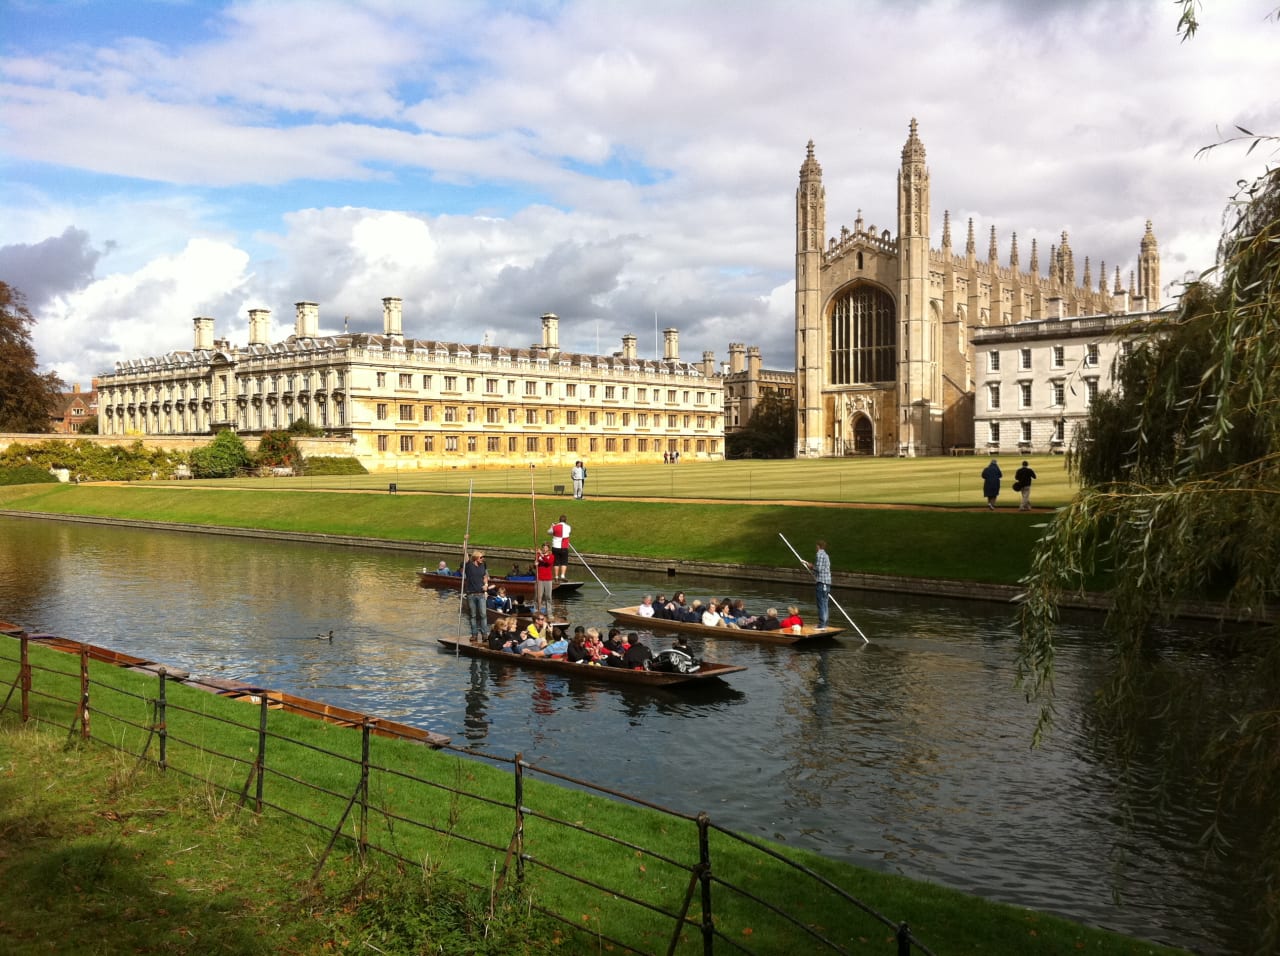 University of Cambridge - Cambridge Digital Humanities MPhil in Digital Humanities